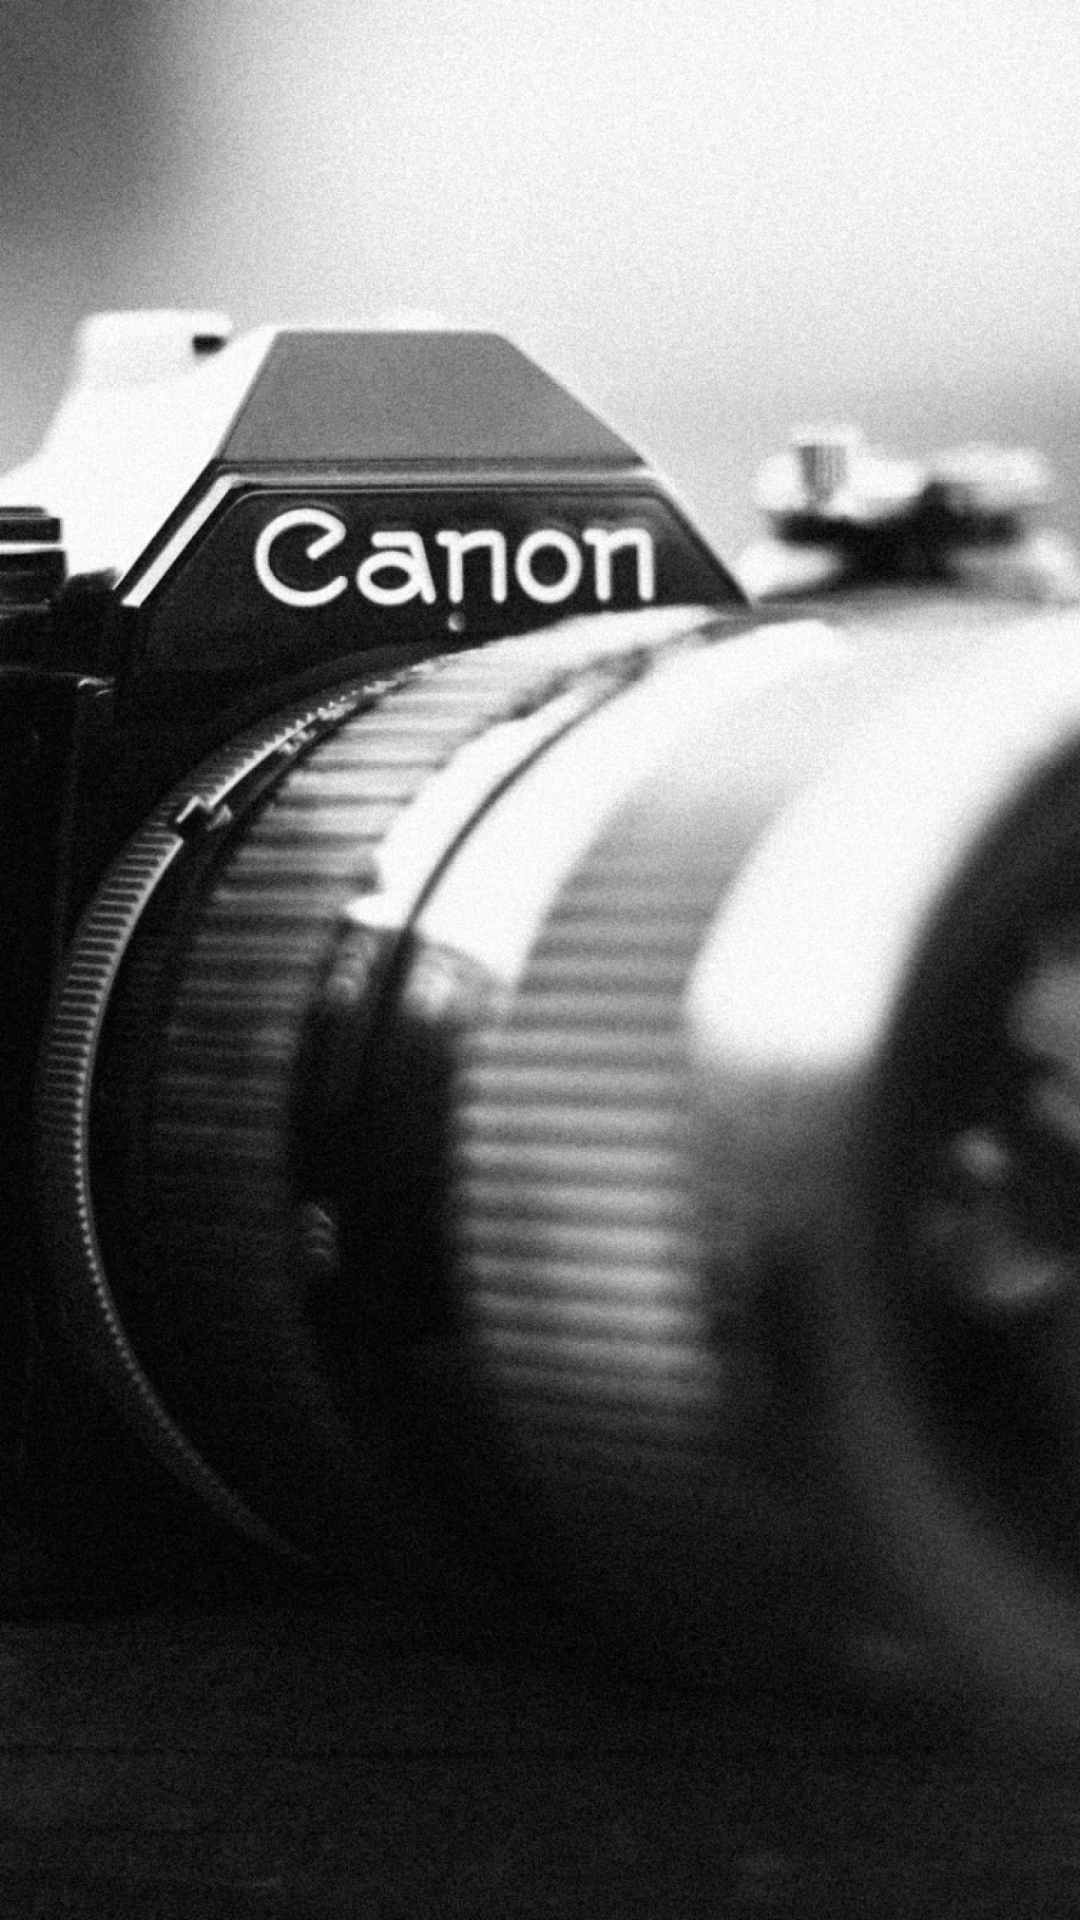 Das Ae-1 Canon Camera Wallpaper 1080x1920